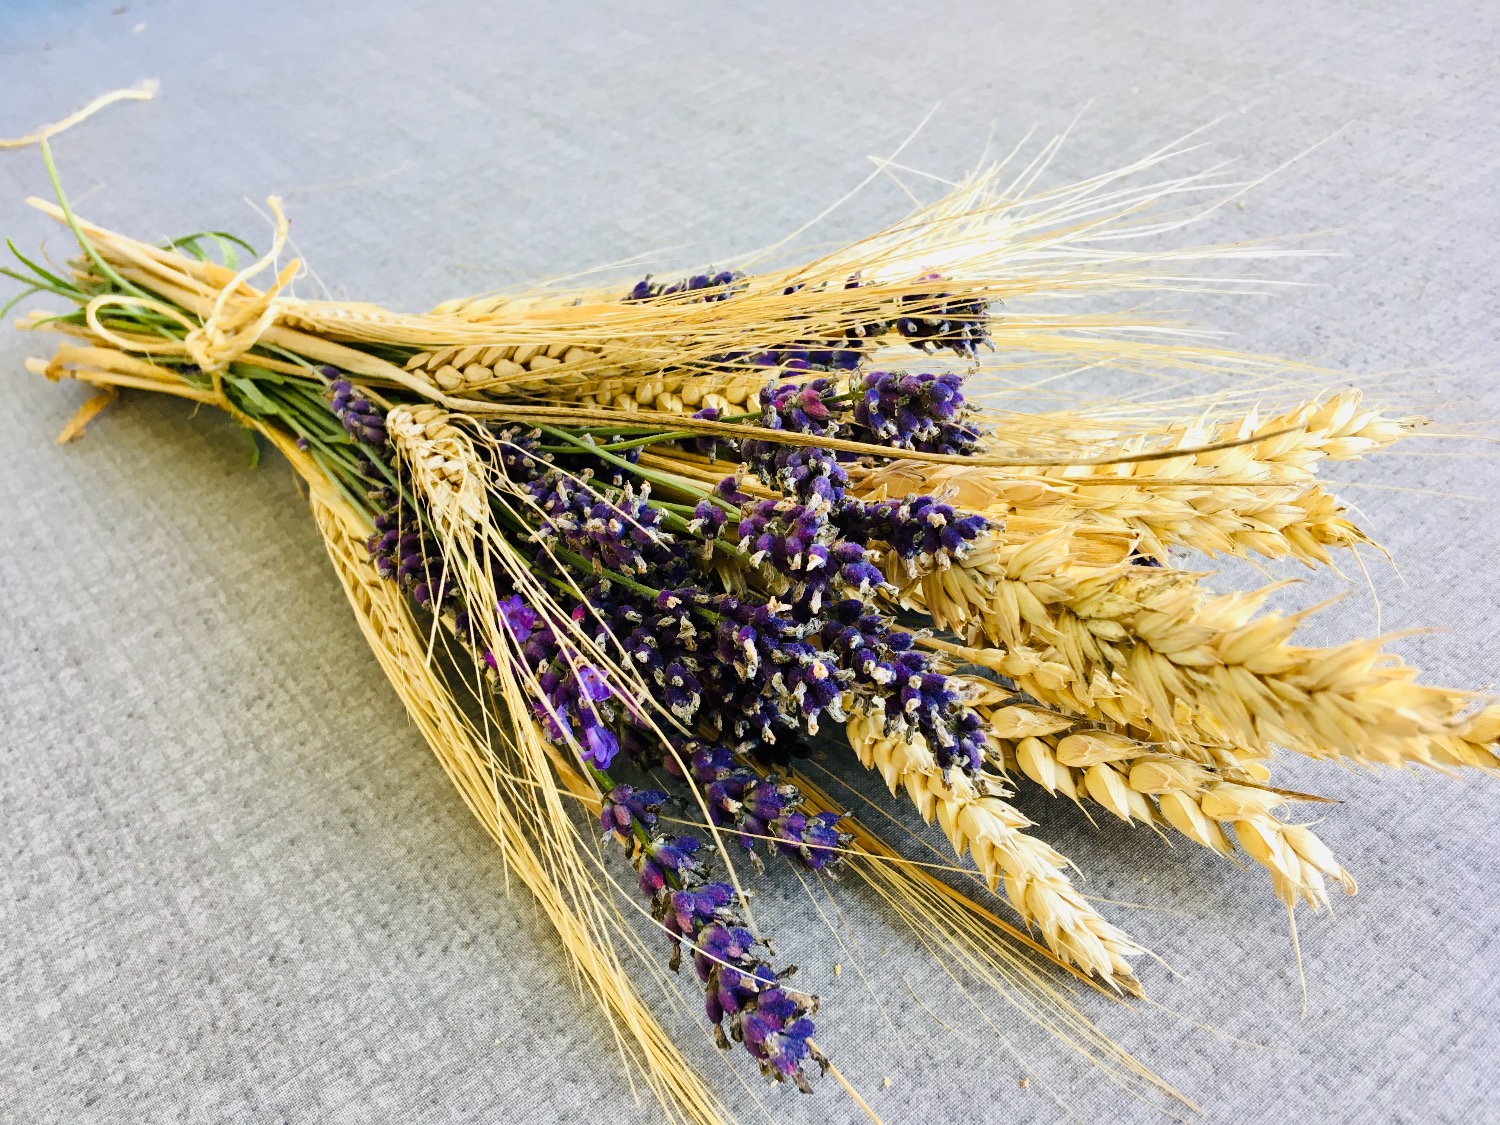 Titelbild zur Idee für die Beschäftigung mit Kindern '(366) Getreide-Lavendel-Strauß binden'